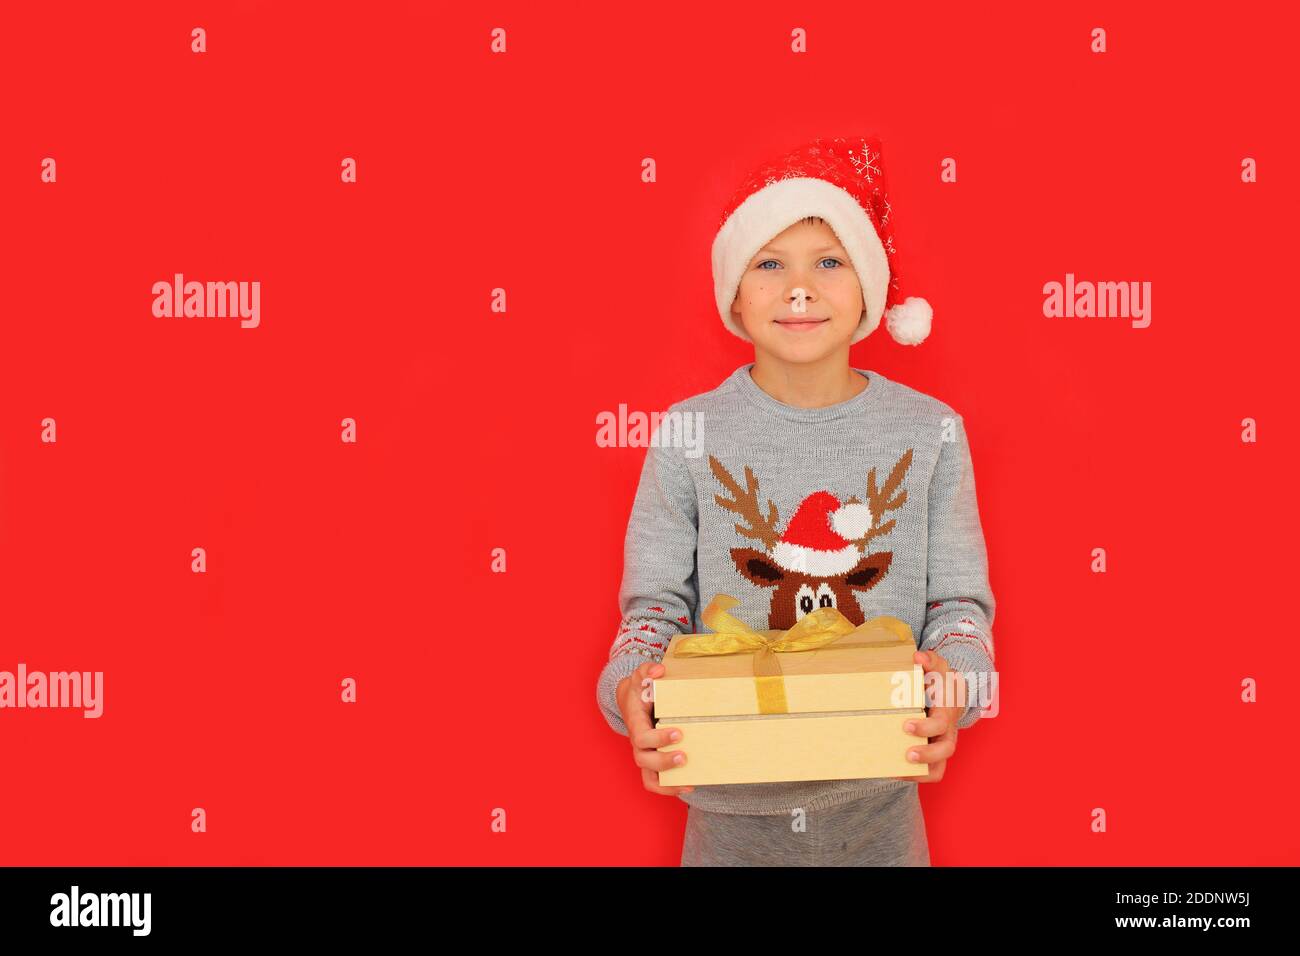 Un garçon dans un chapeau de père Noël et un chandail du nouvel an avec un cerf tiennent un cadeau du nouvel an sur fond rouge. L'enfant ressent les émotions de recevoir un cadeau de Noël Banque D'Images